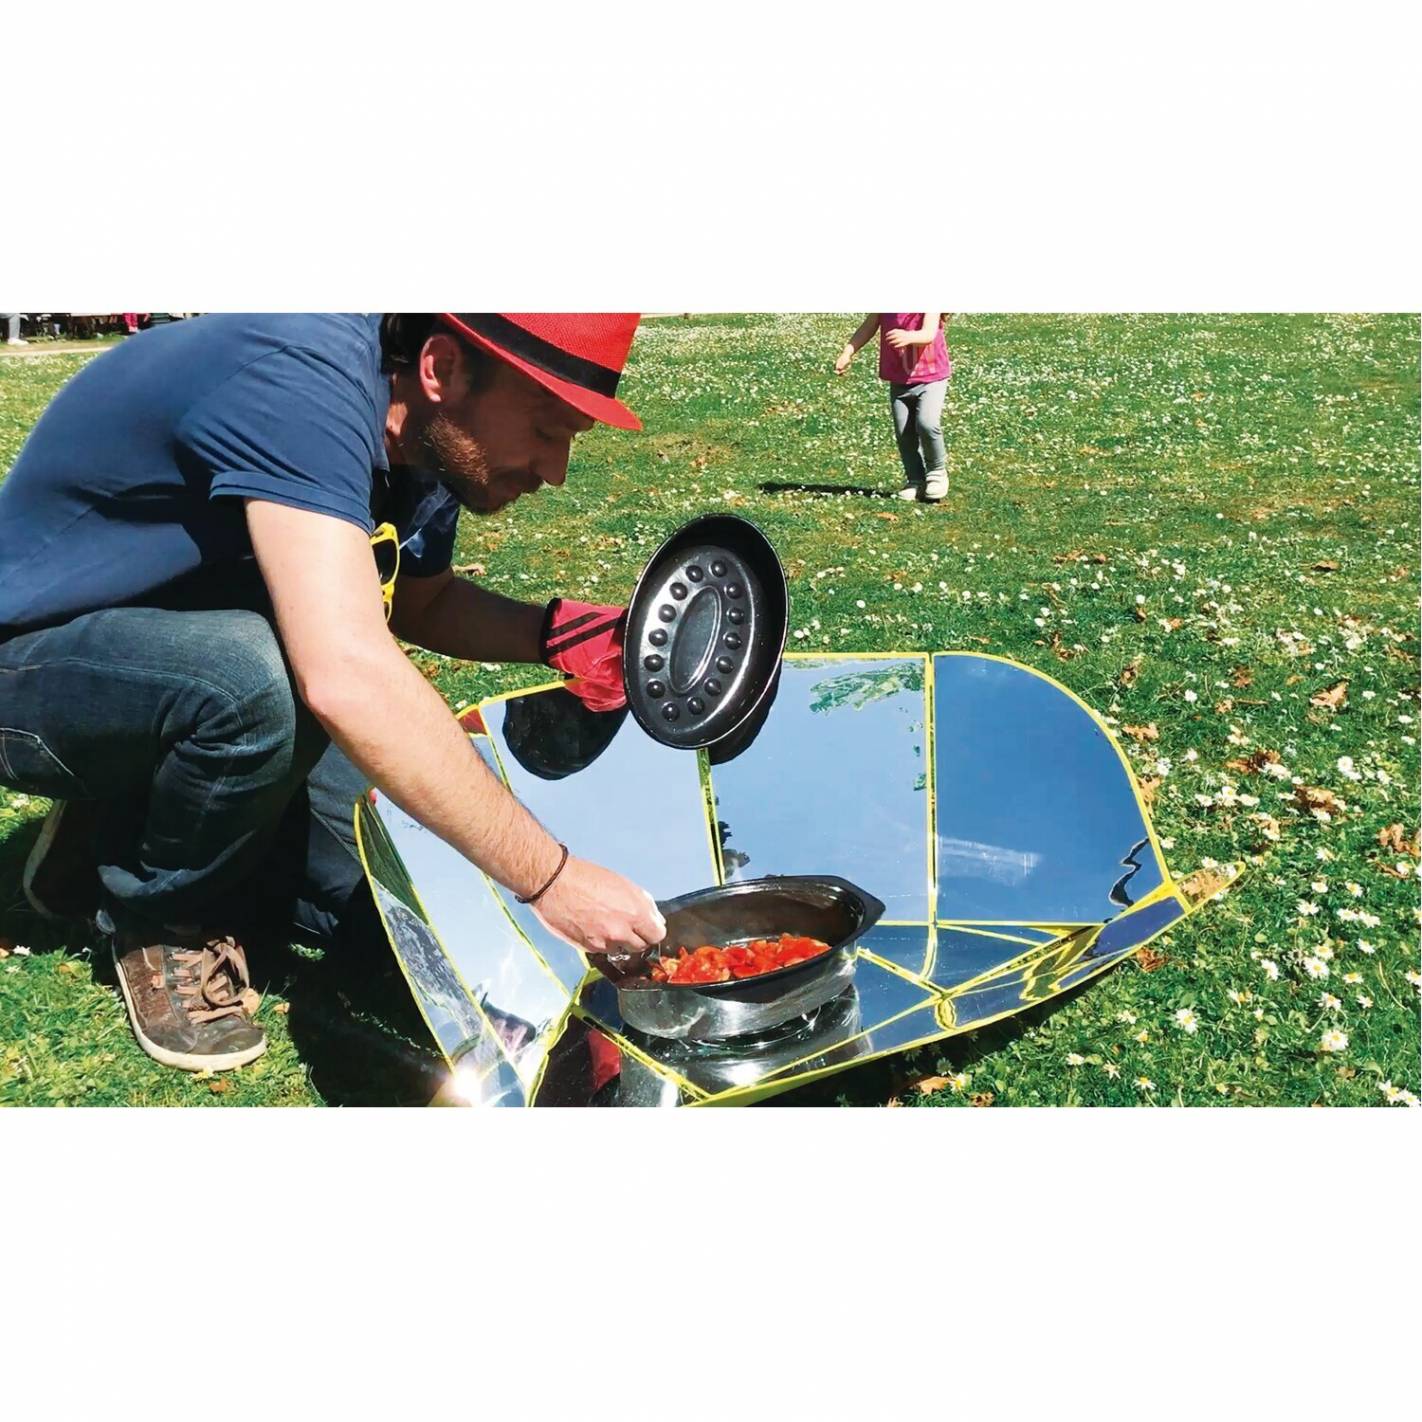 doit avoir pour pique-nique camping Fondchy cuiseur solaire portatif four solaire poêle solaire grille solaire